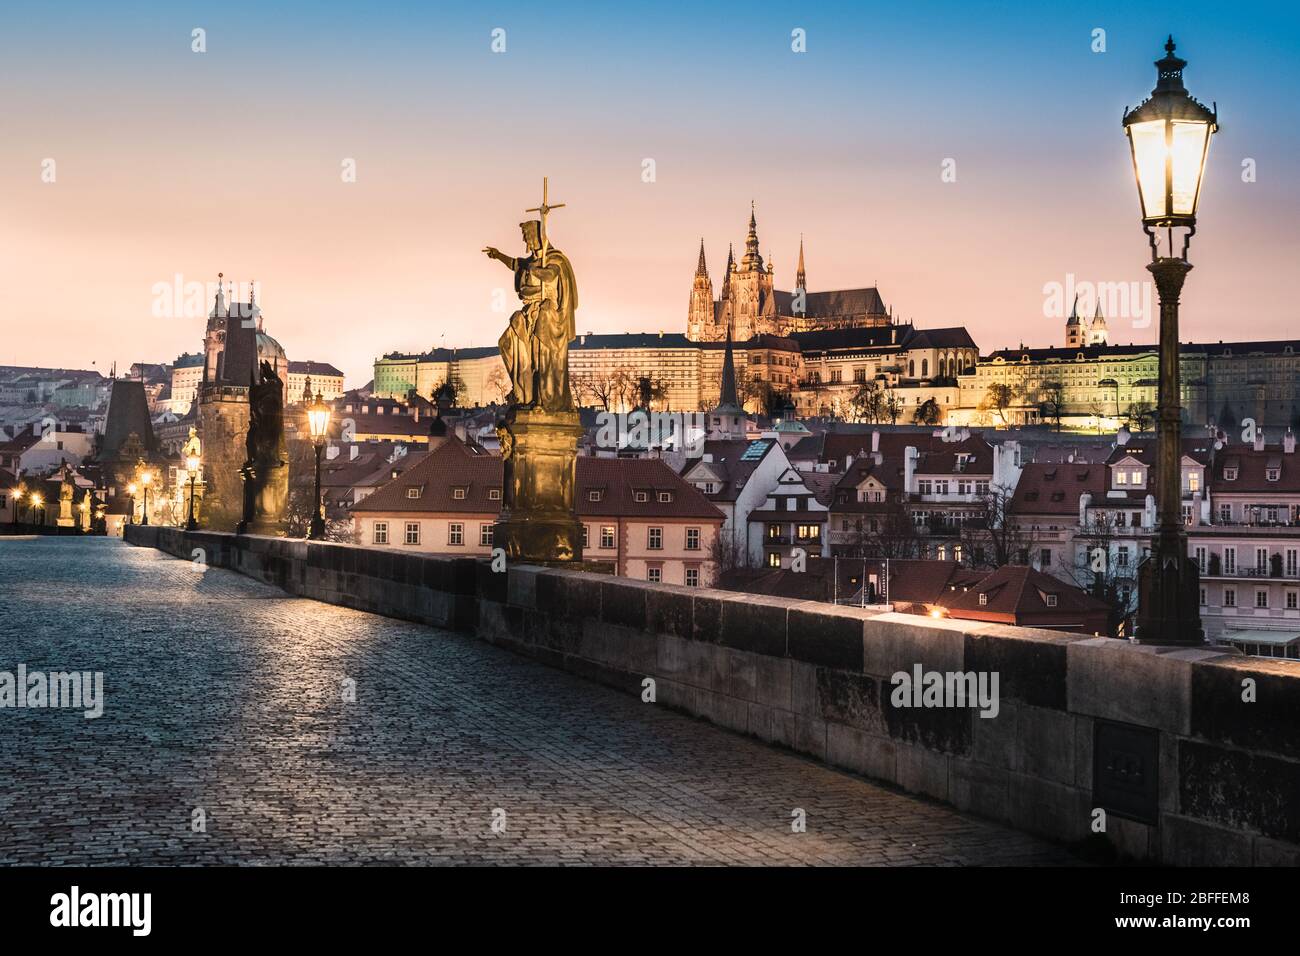 Charles bridge during sunset - empty due to coronavirus pandemic, Prague, Czech Republic Stock Photo